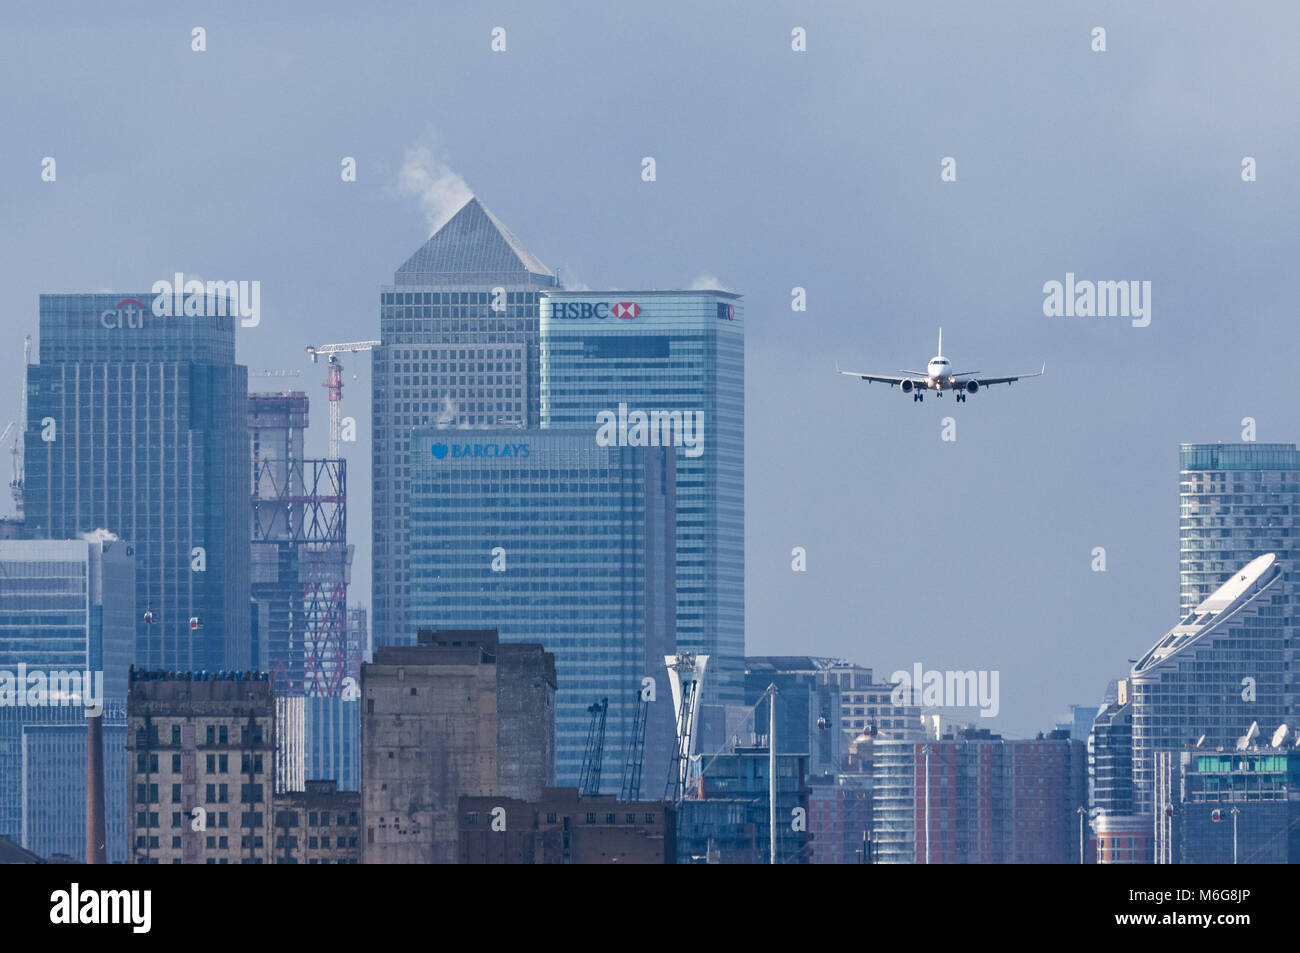 Atterrissage en avion à l'aéroport de London City avec les gratte-ciel de Canary Wharf en arrière-plan, Londres Angleterre Royaume-Uni Banque D'Images